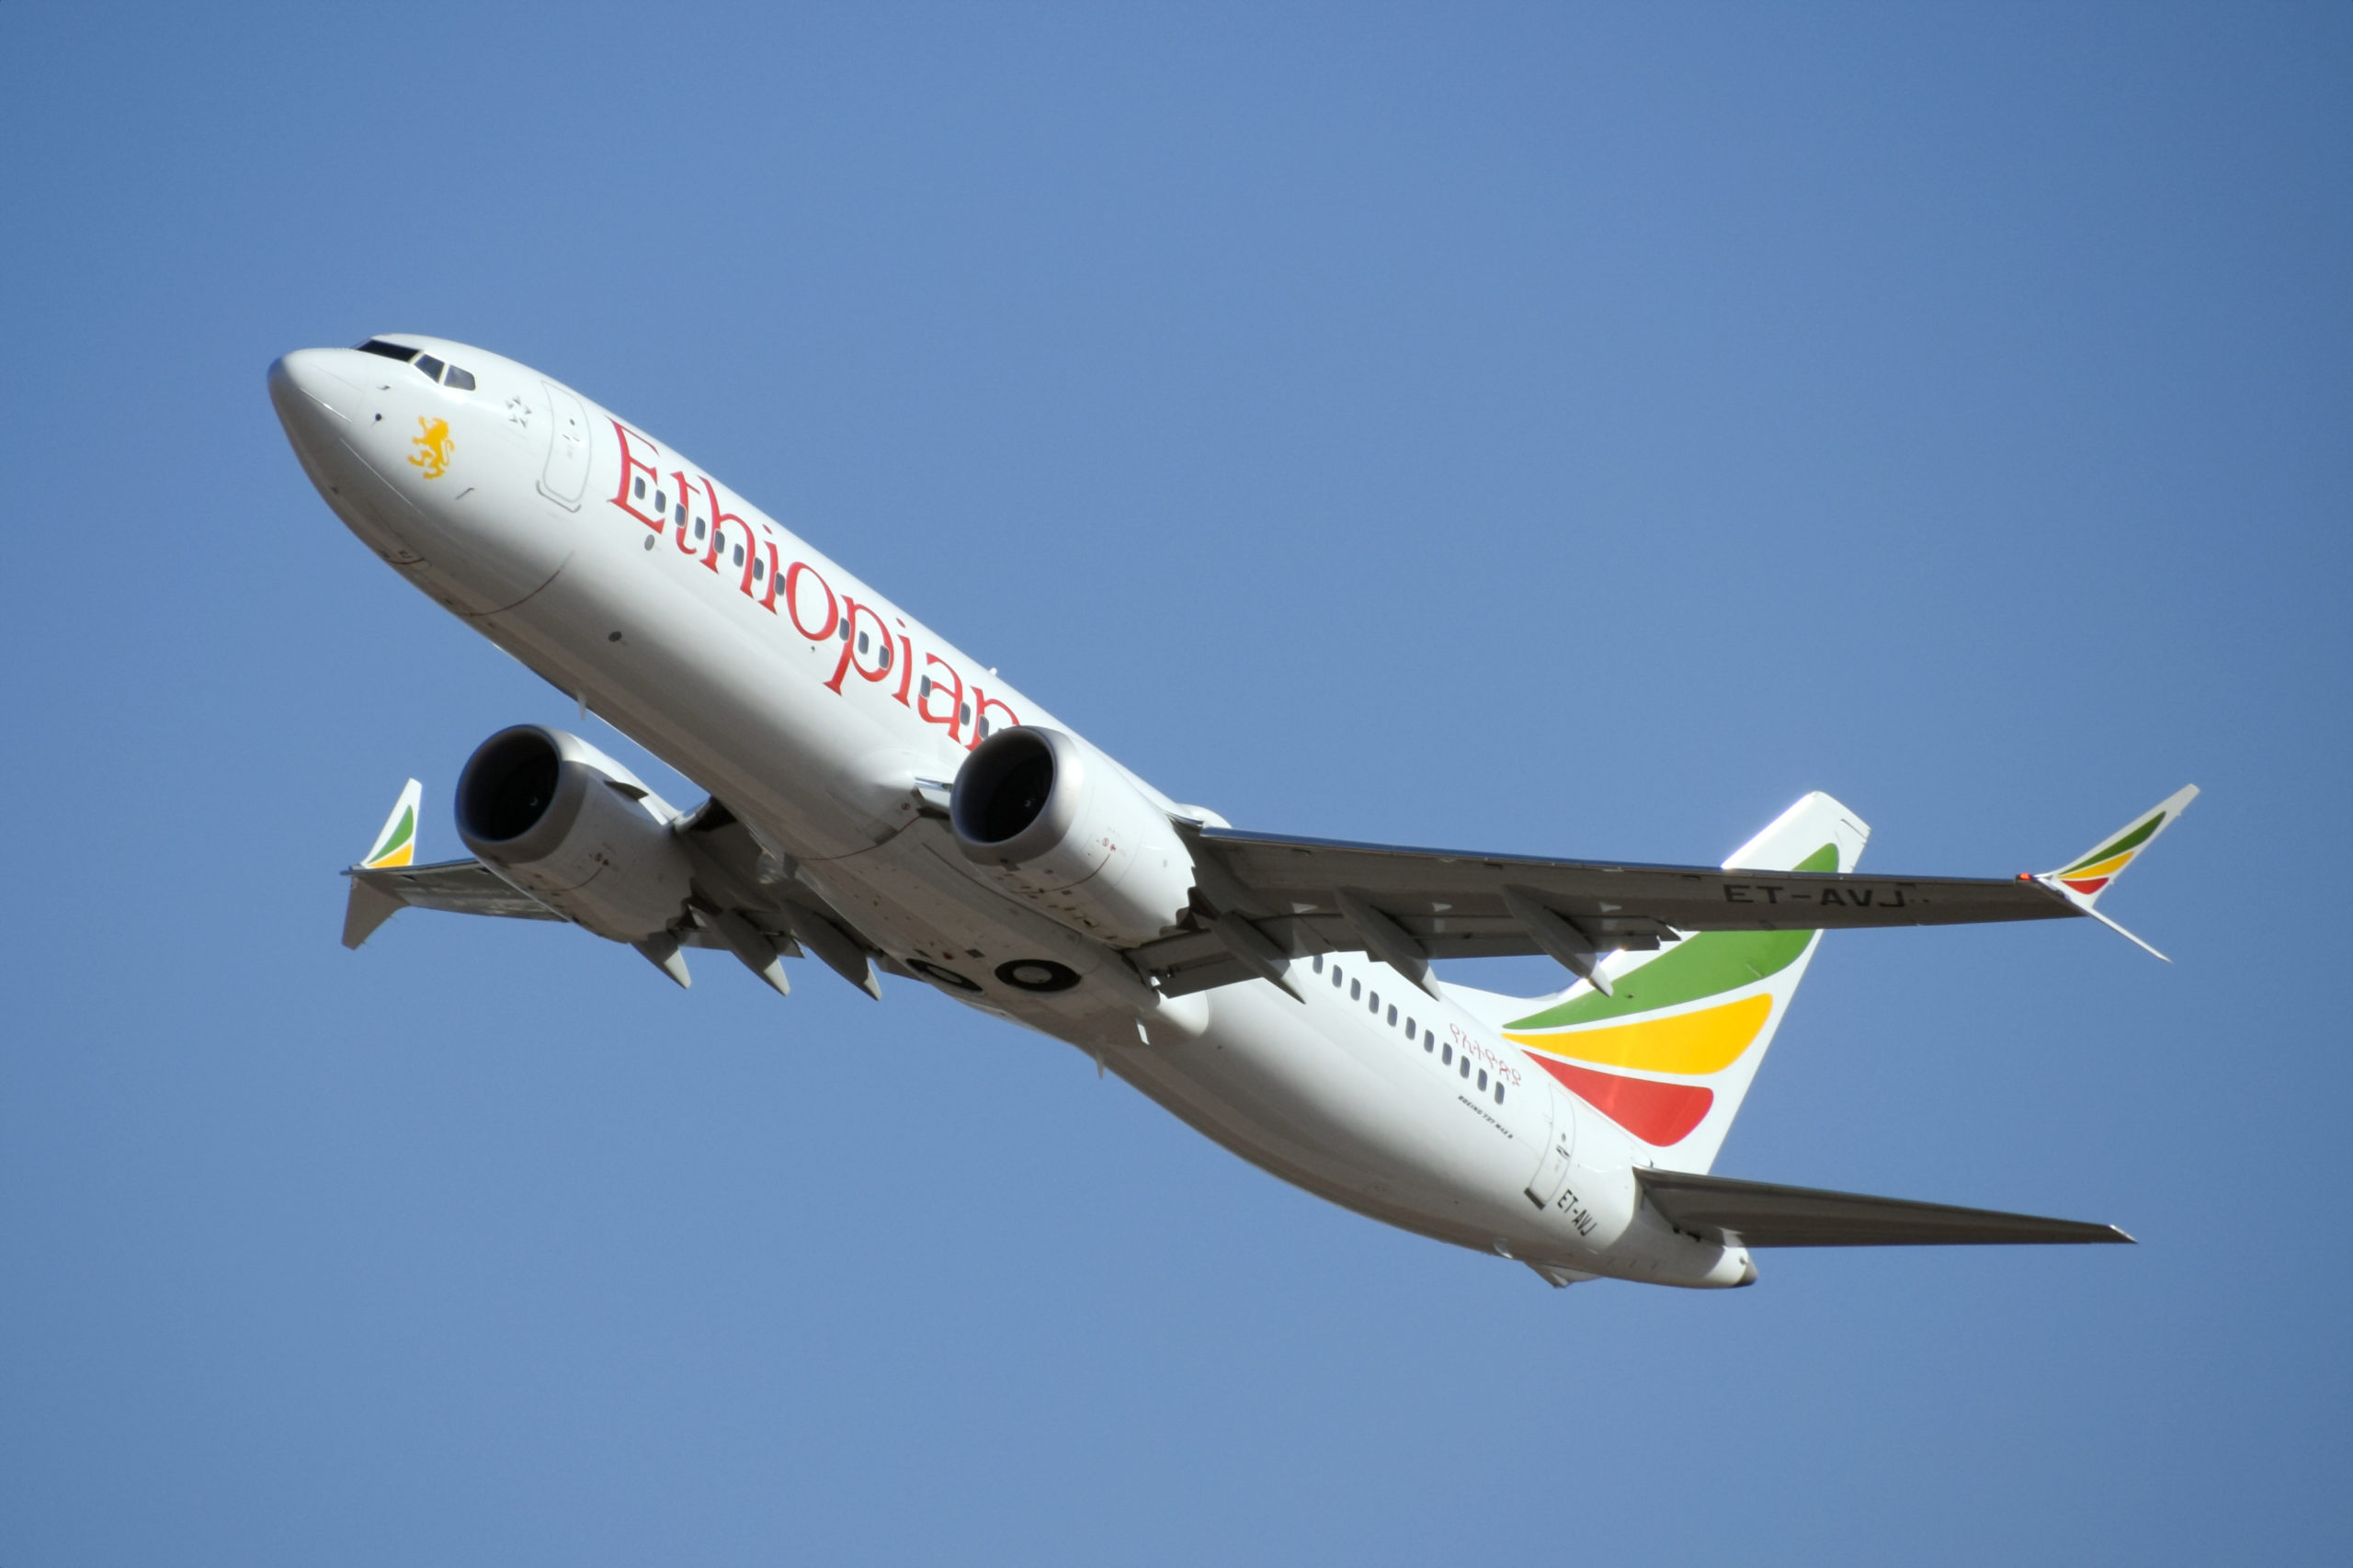 NTSB, Etiyopya’nın, 2019 Boeing 737 MAX kazasına ilişkin nihai raporunu eleştirdi